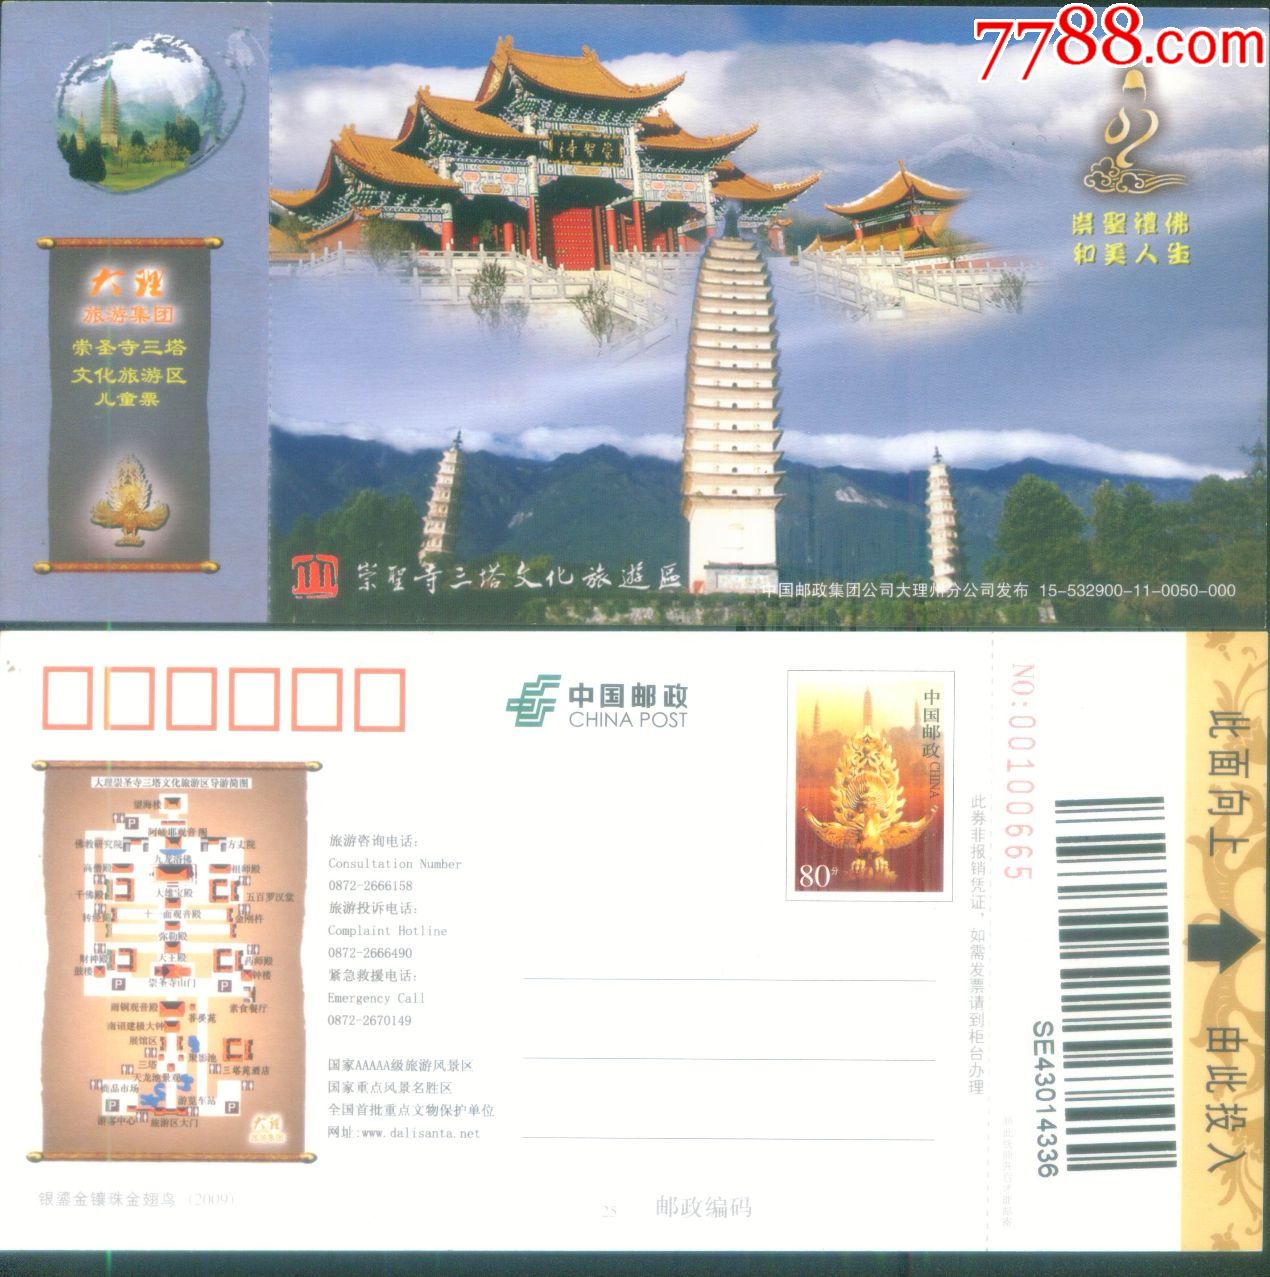 云南大理崇圣寺三塔文化旅游景区邮资明信片门票和简介正背面图